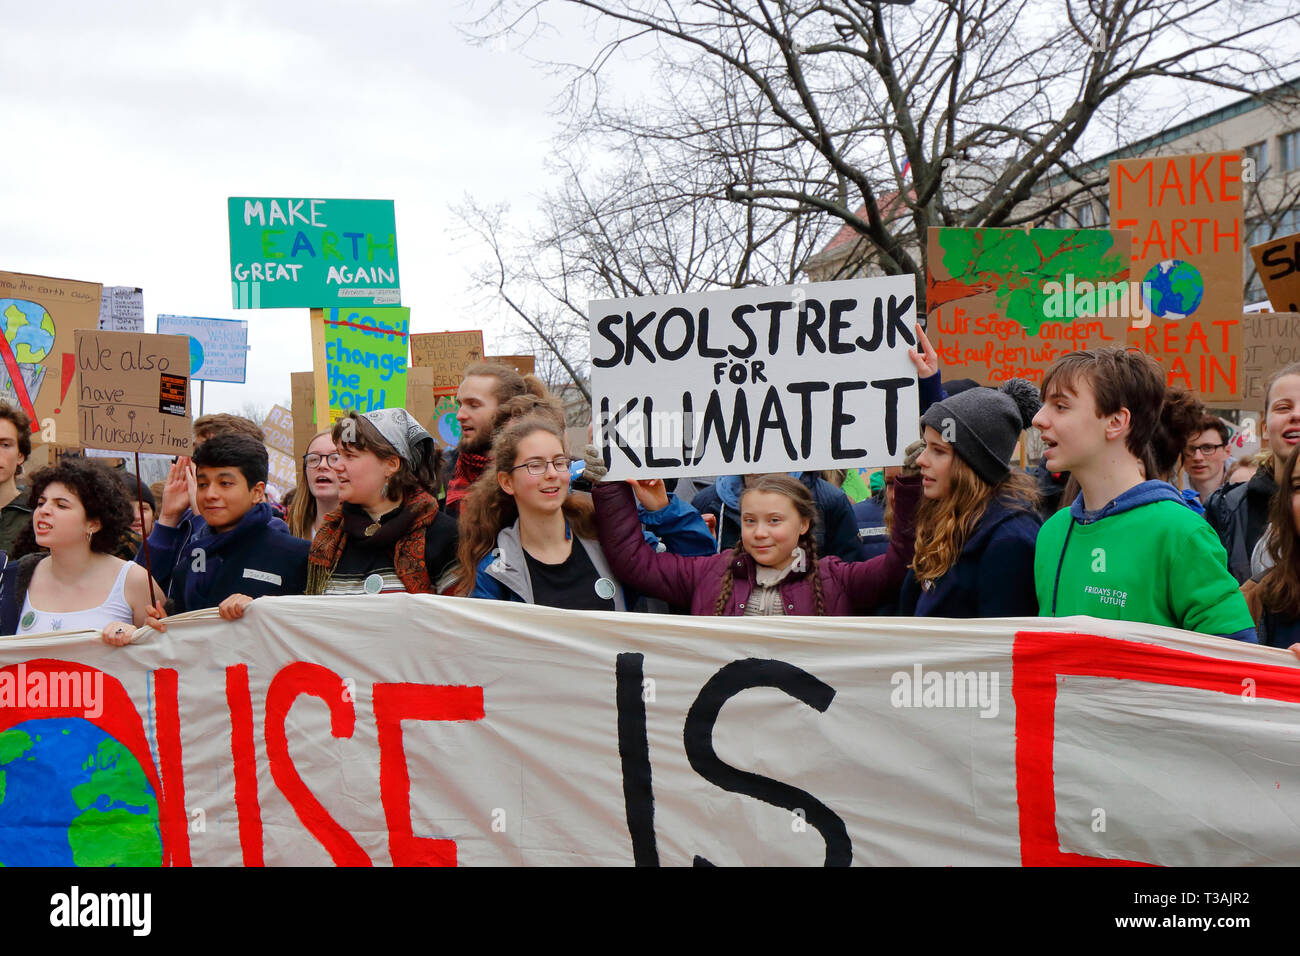 Greta Thunberg est titulaire d'un signe pour kolstrejk «Klimatet" (École grève pour le climat) au 29 mars 2019 vendredi pour les changements climatiques à venir mars, Berlin Banque D'Images